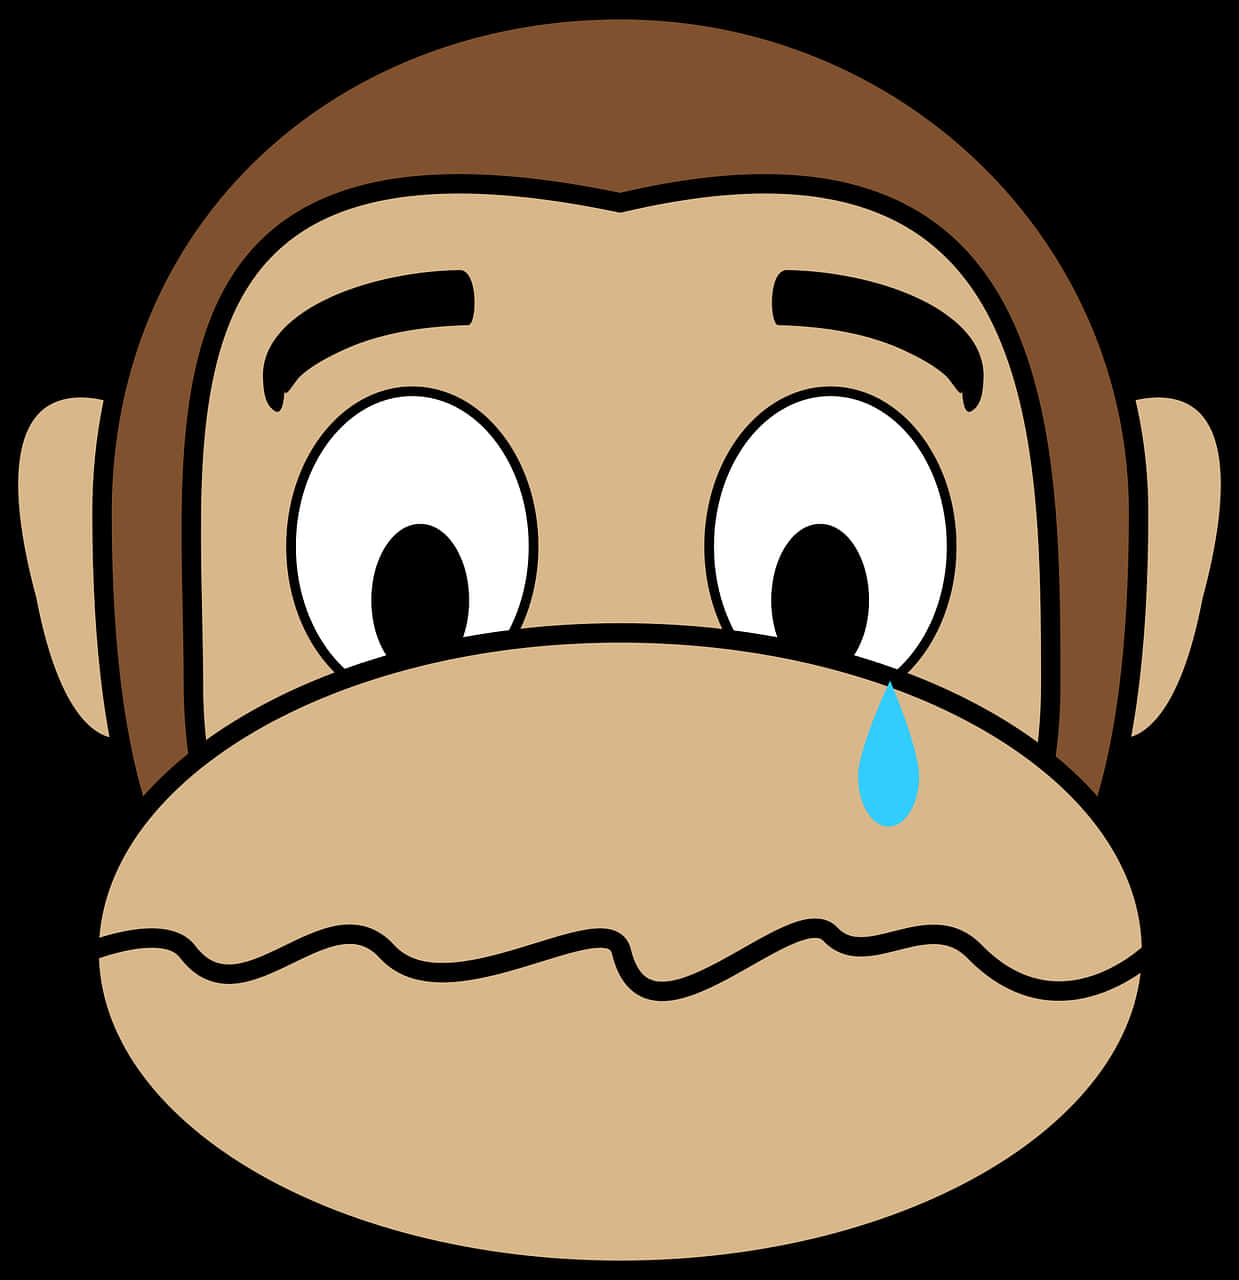 Cartoon Monkey With Tears On Face